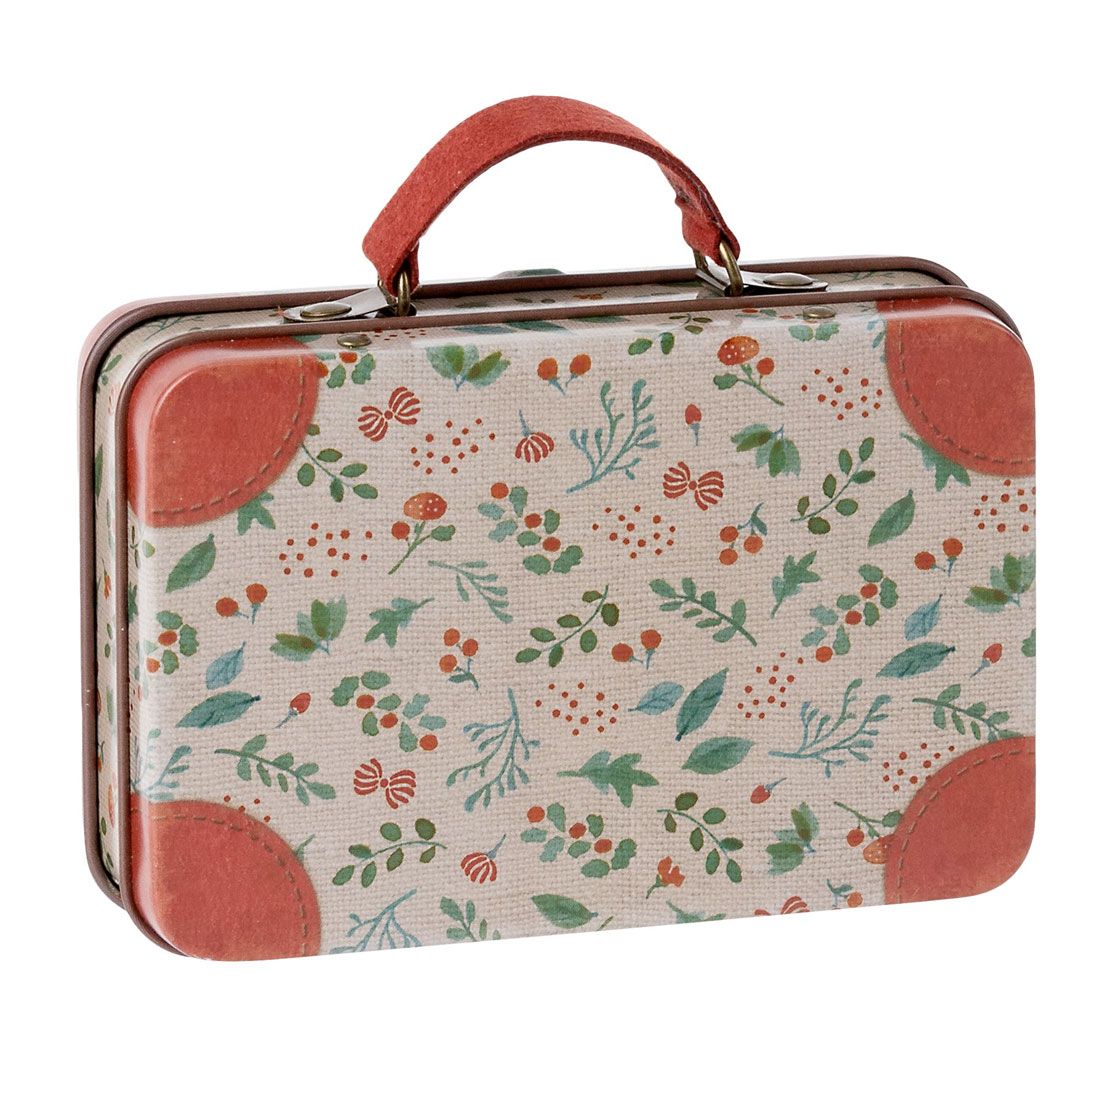 Mini metal kuffert fra Maileg med grene og bær. Kufferten har en rød hank.